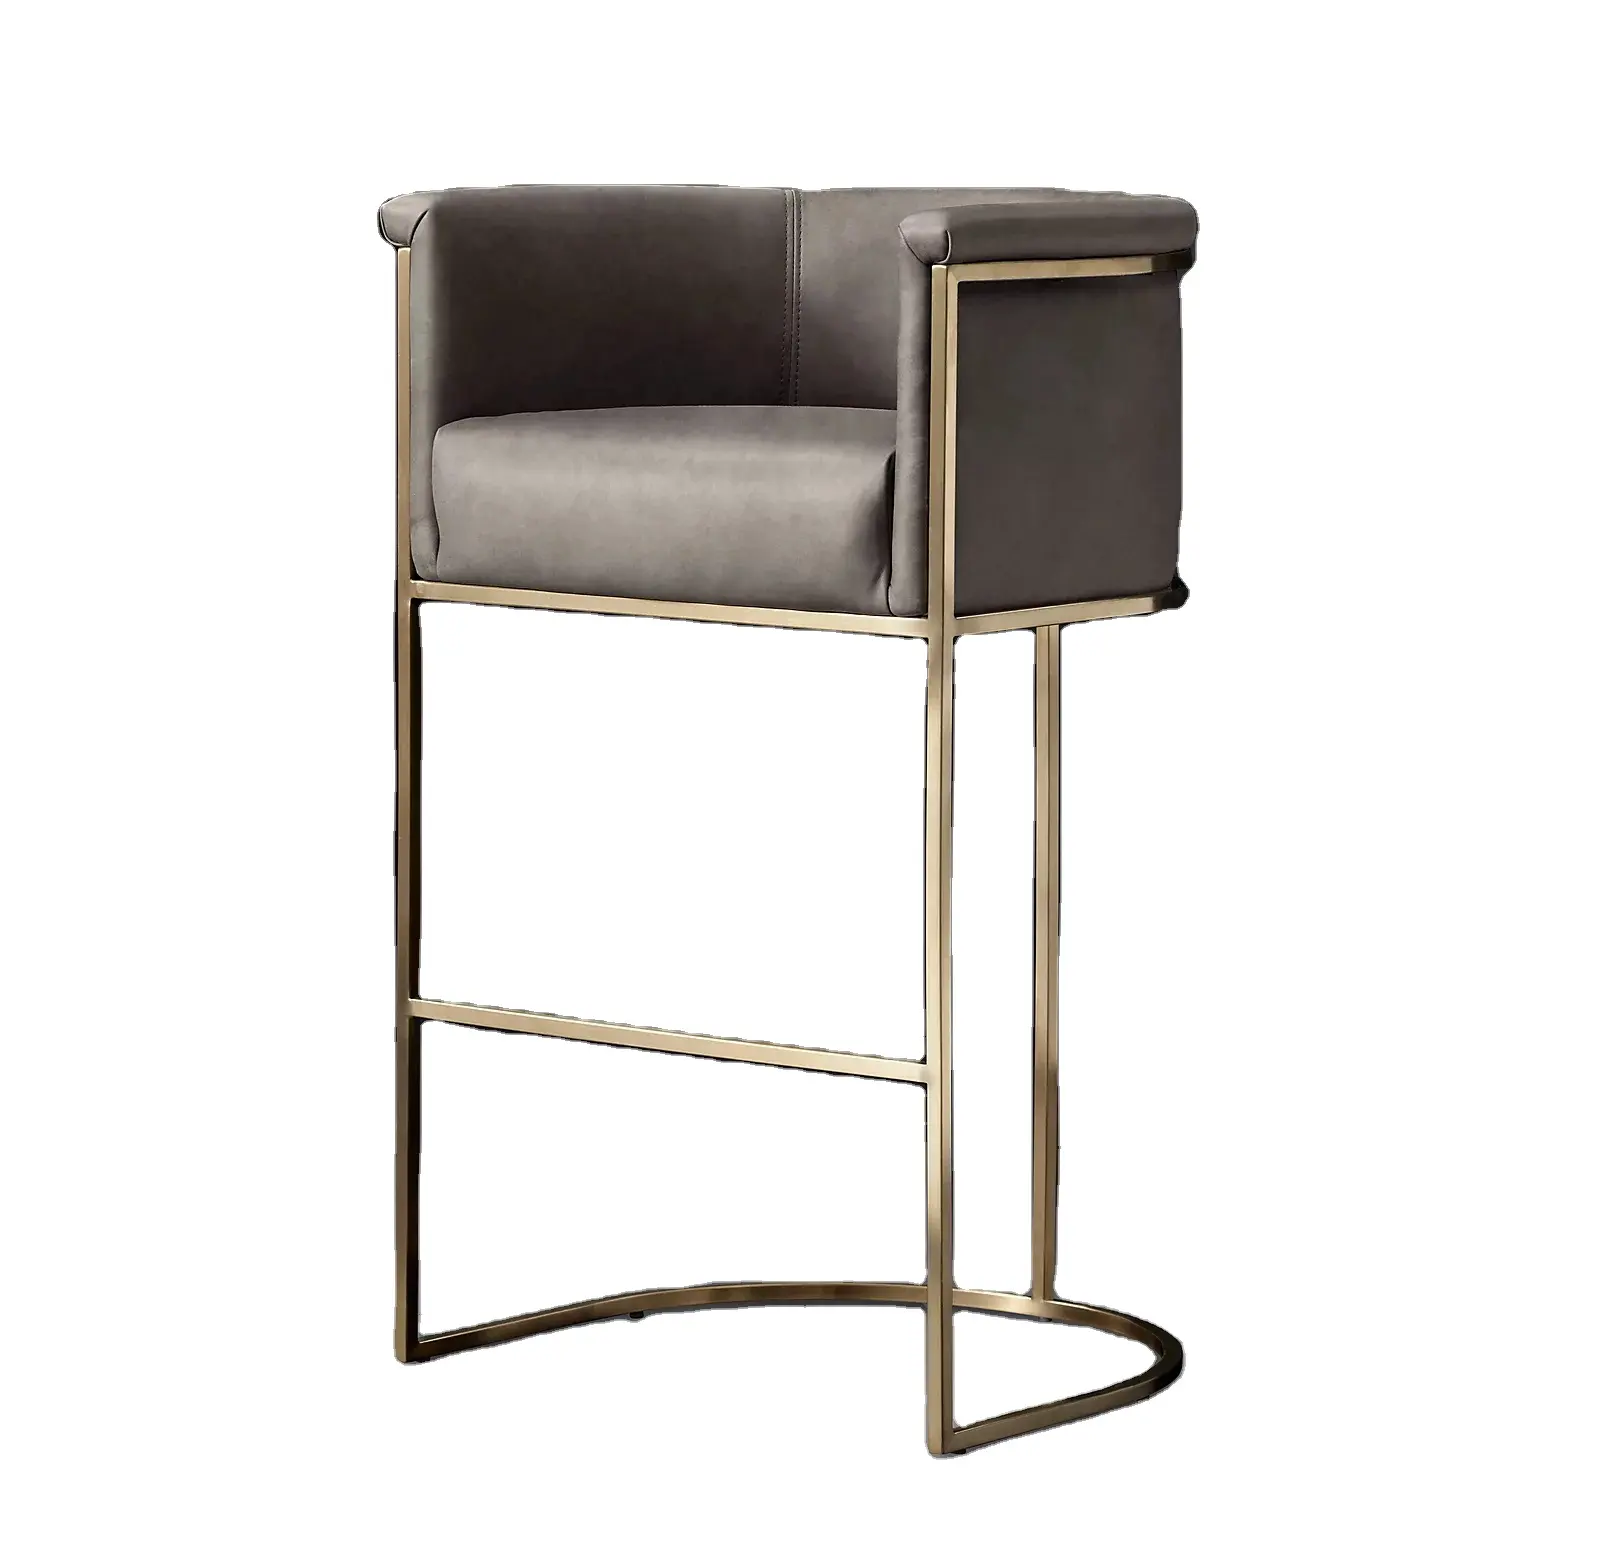 Barrelback – tabouret de comptoir de bar en métal doré, chaise moderne, tabouret de bar en acier inoxydable pour la cuisine, le Restaurant et le bar